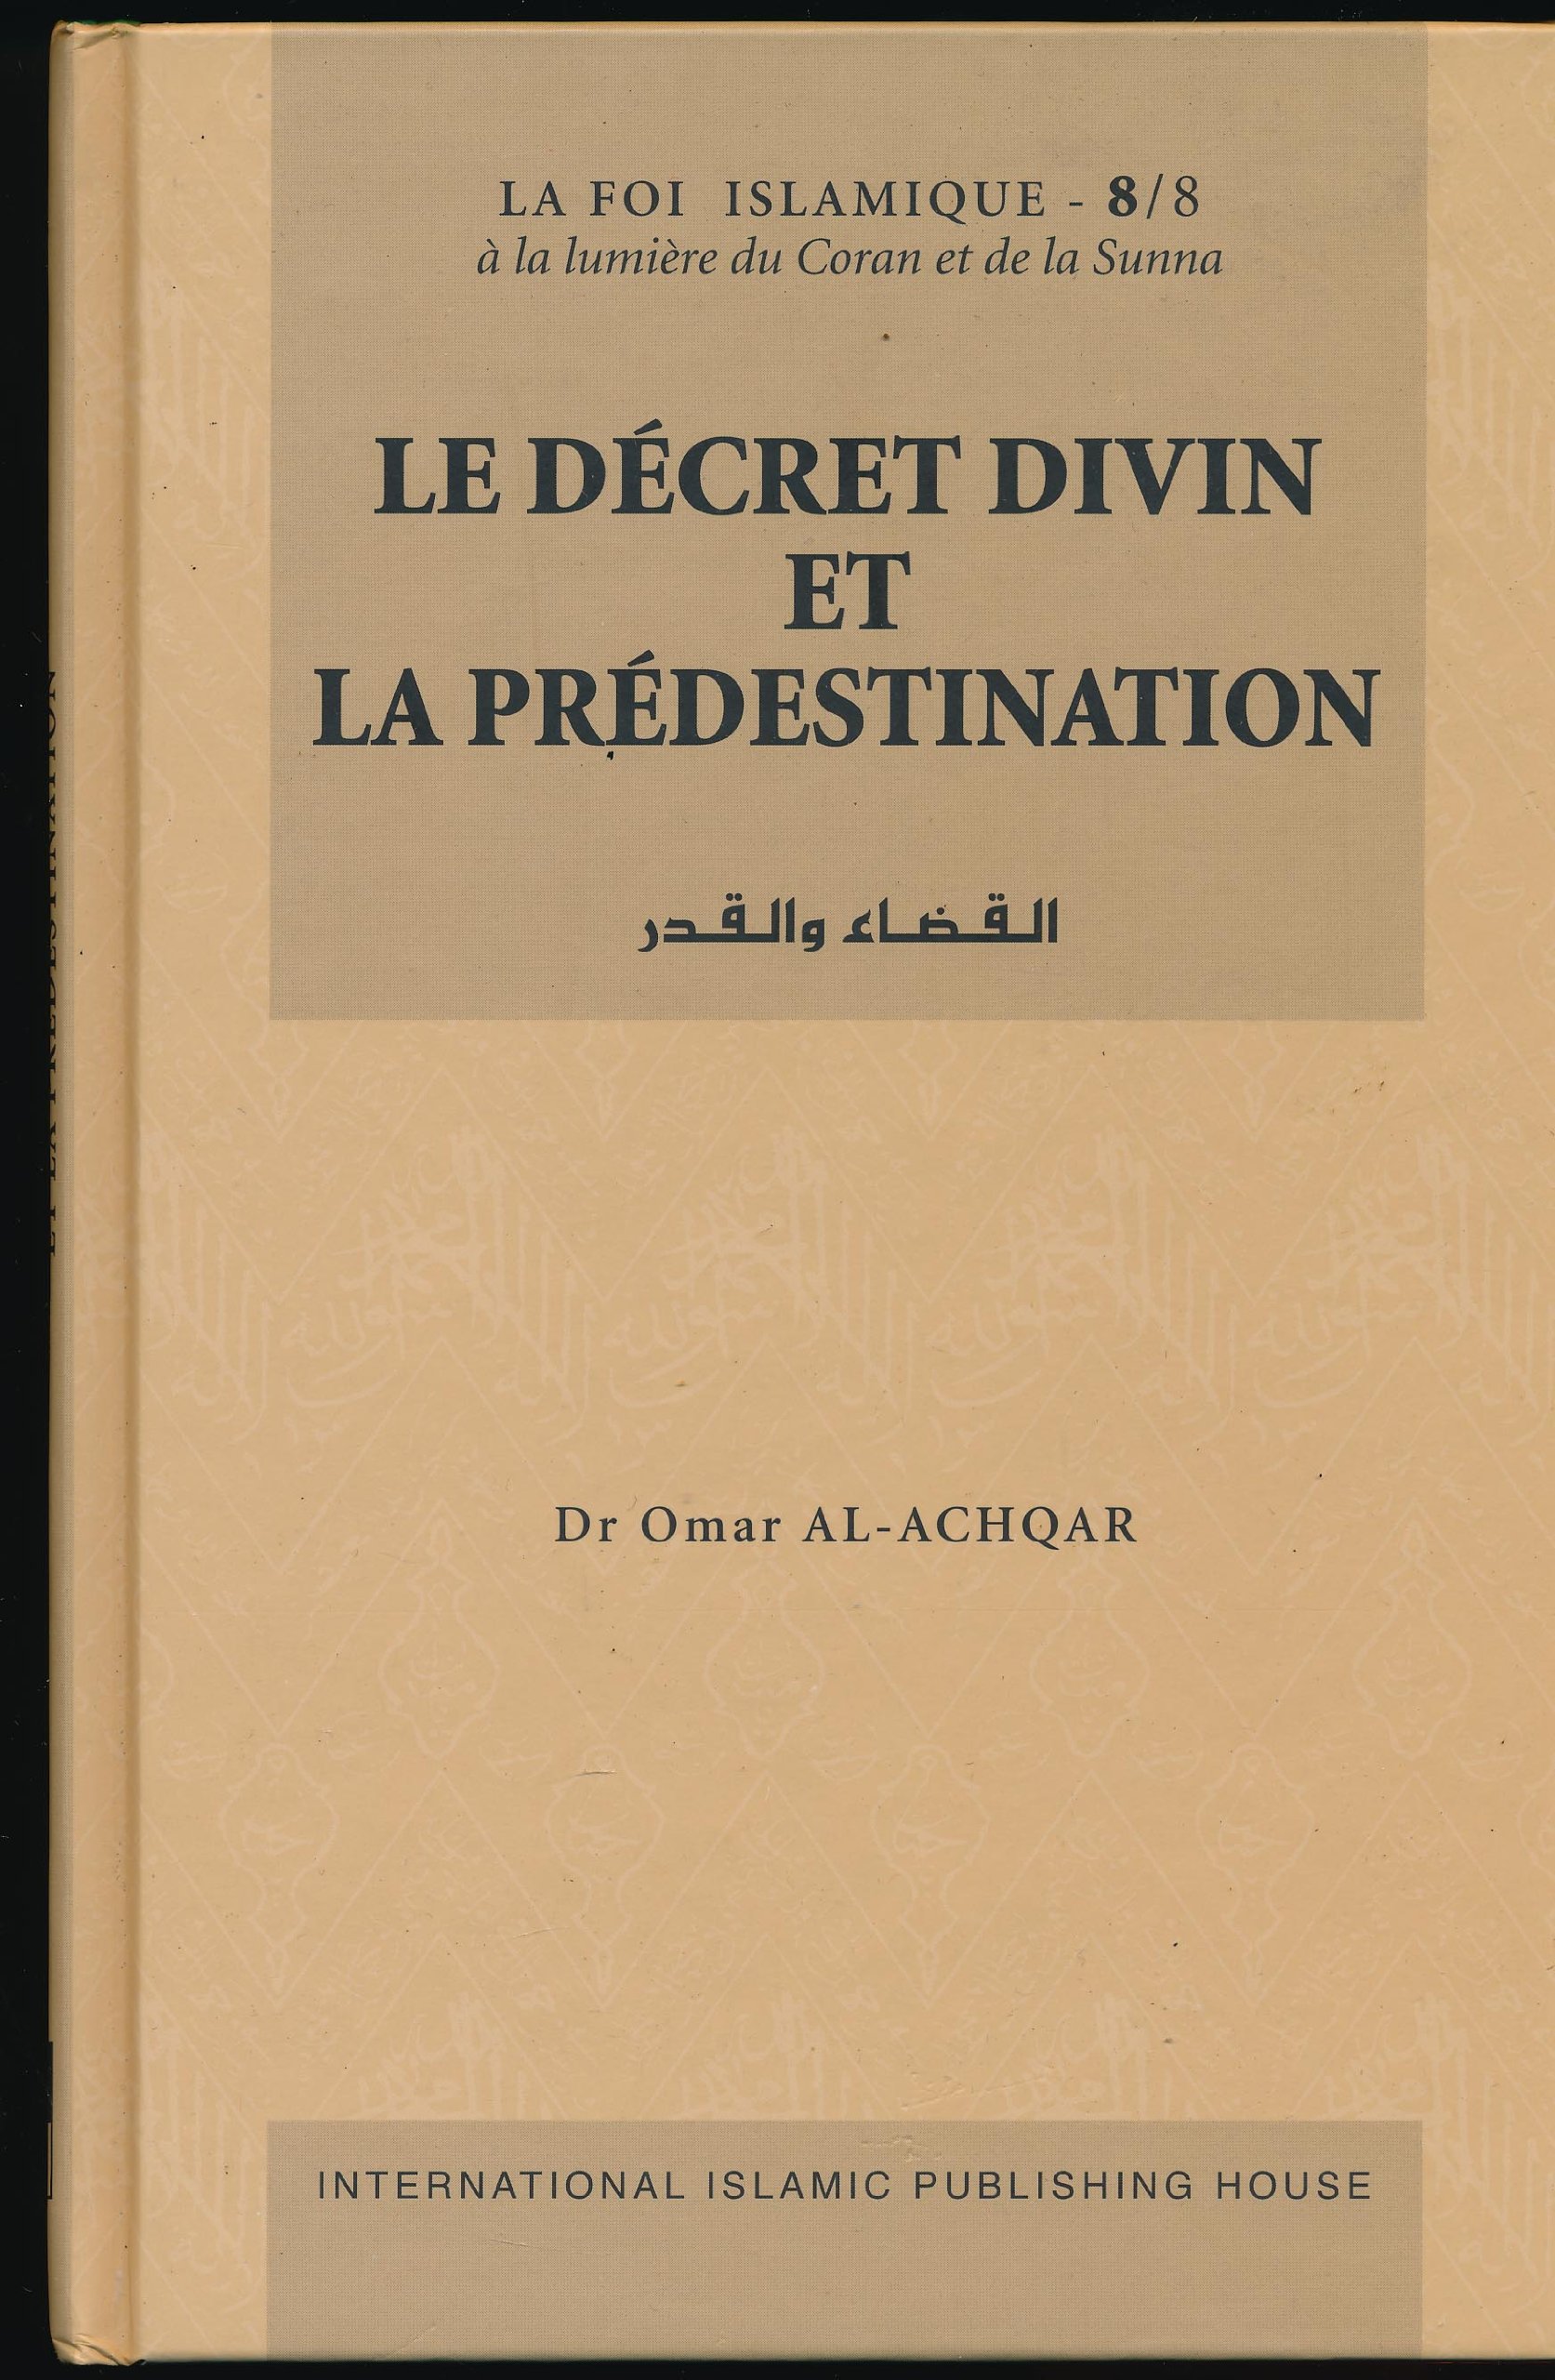 Le Décret Divin et la Prédestination (القضاء والقدر)